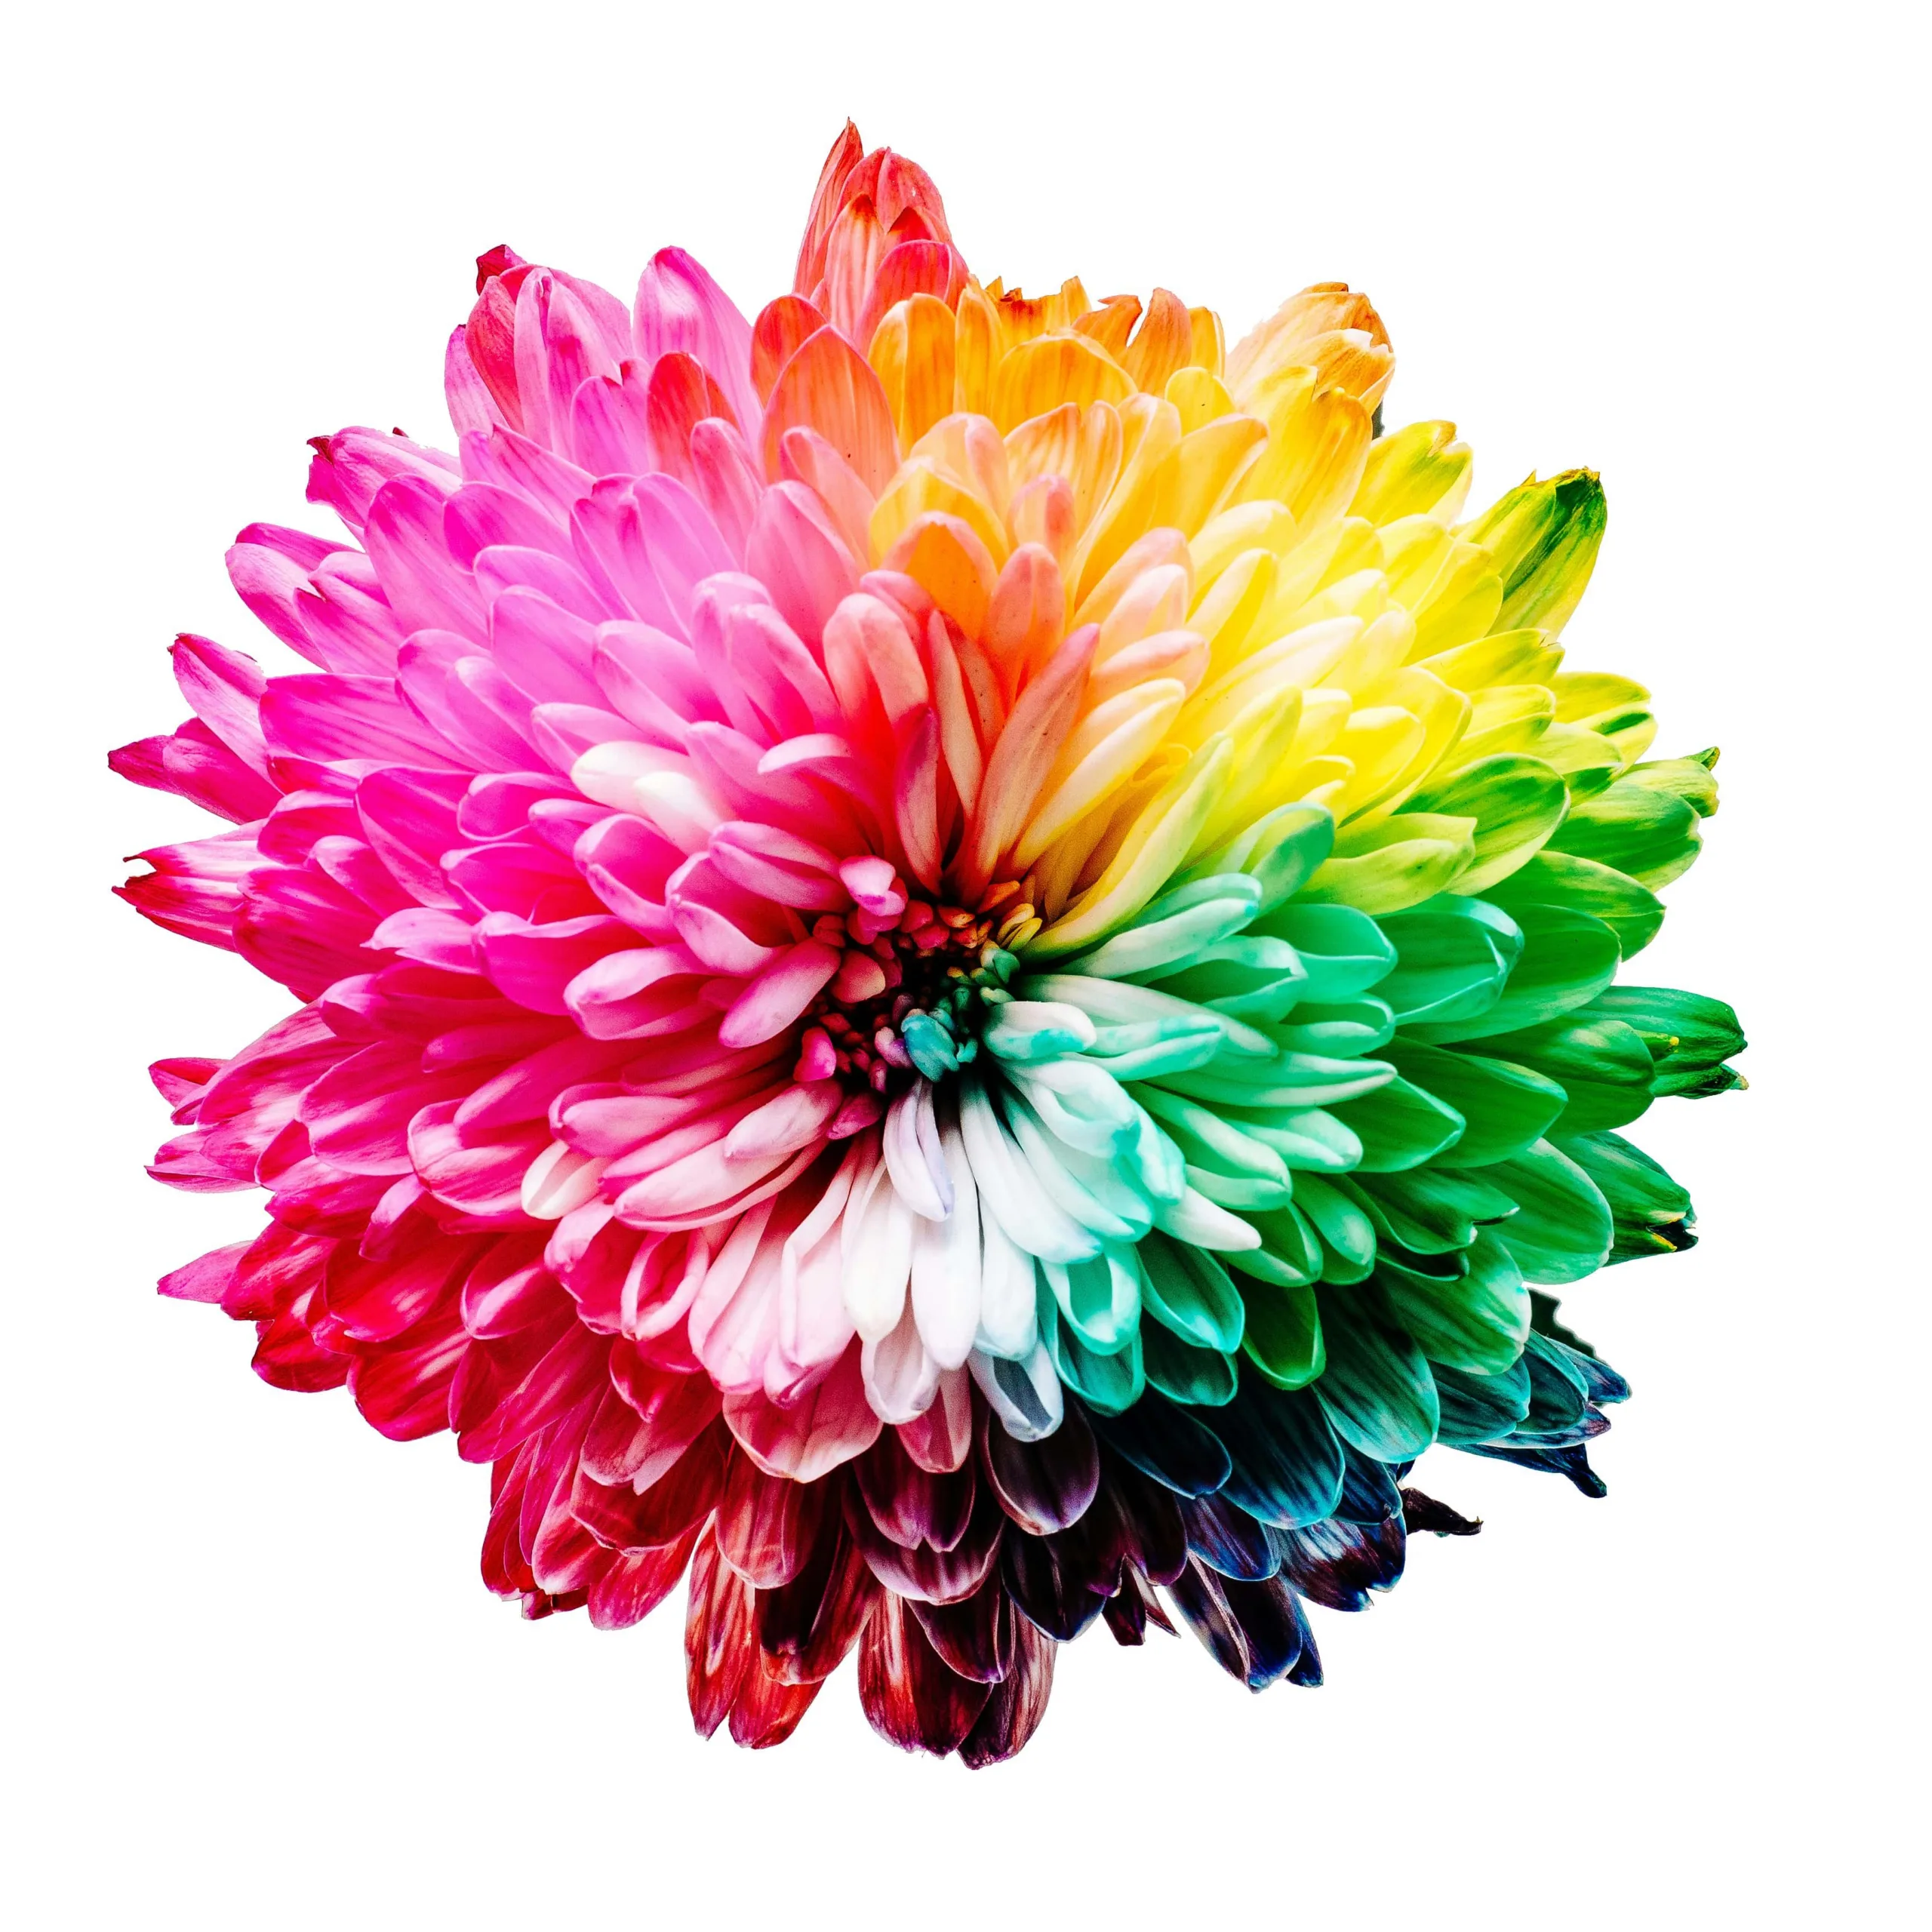 Rainbow_colourful_flower_sharon-pittaway-iMdsjoiftZo-unsplash-min